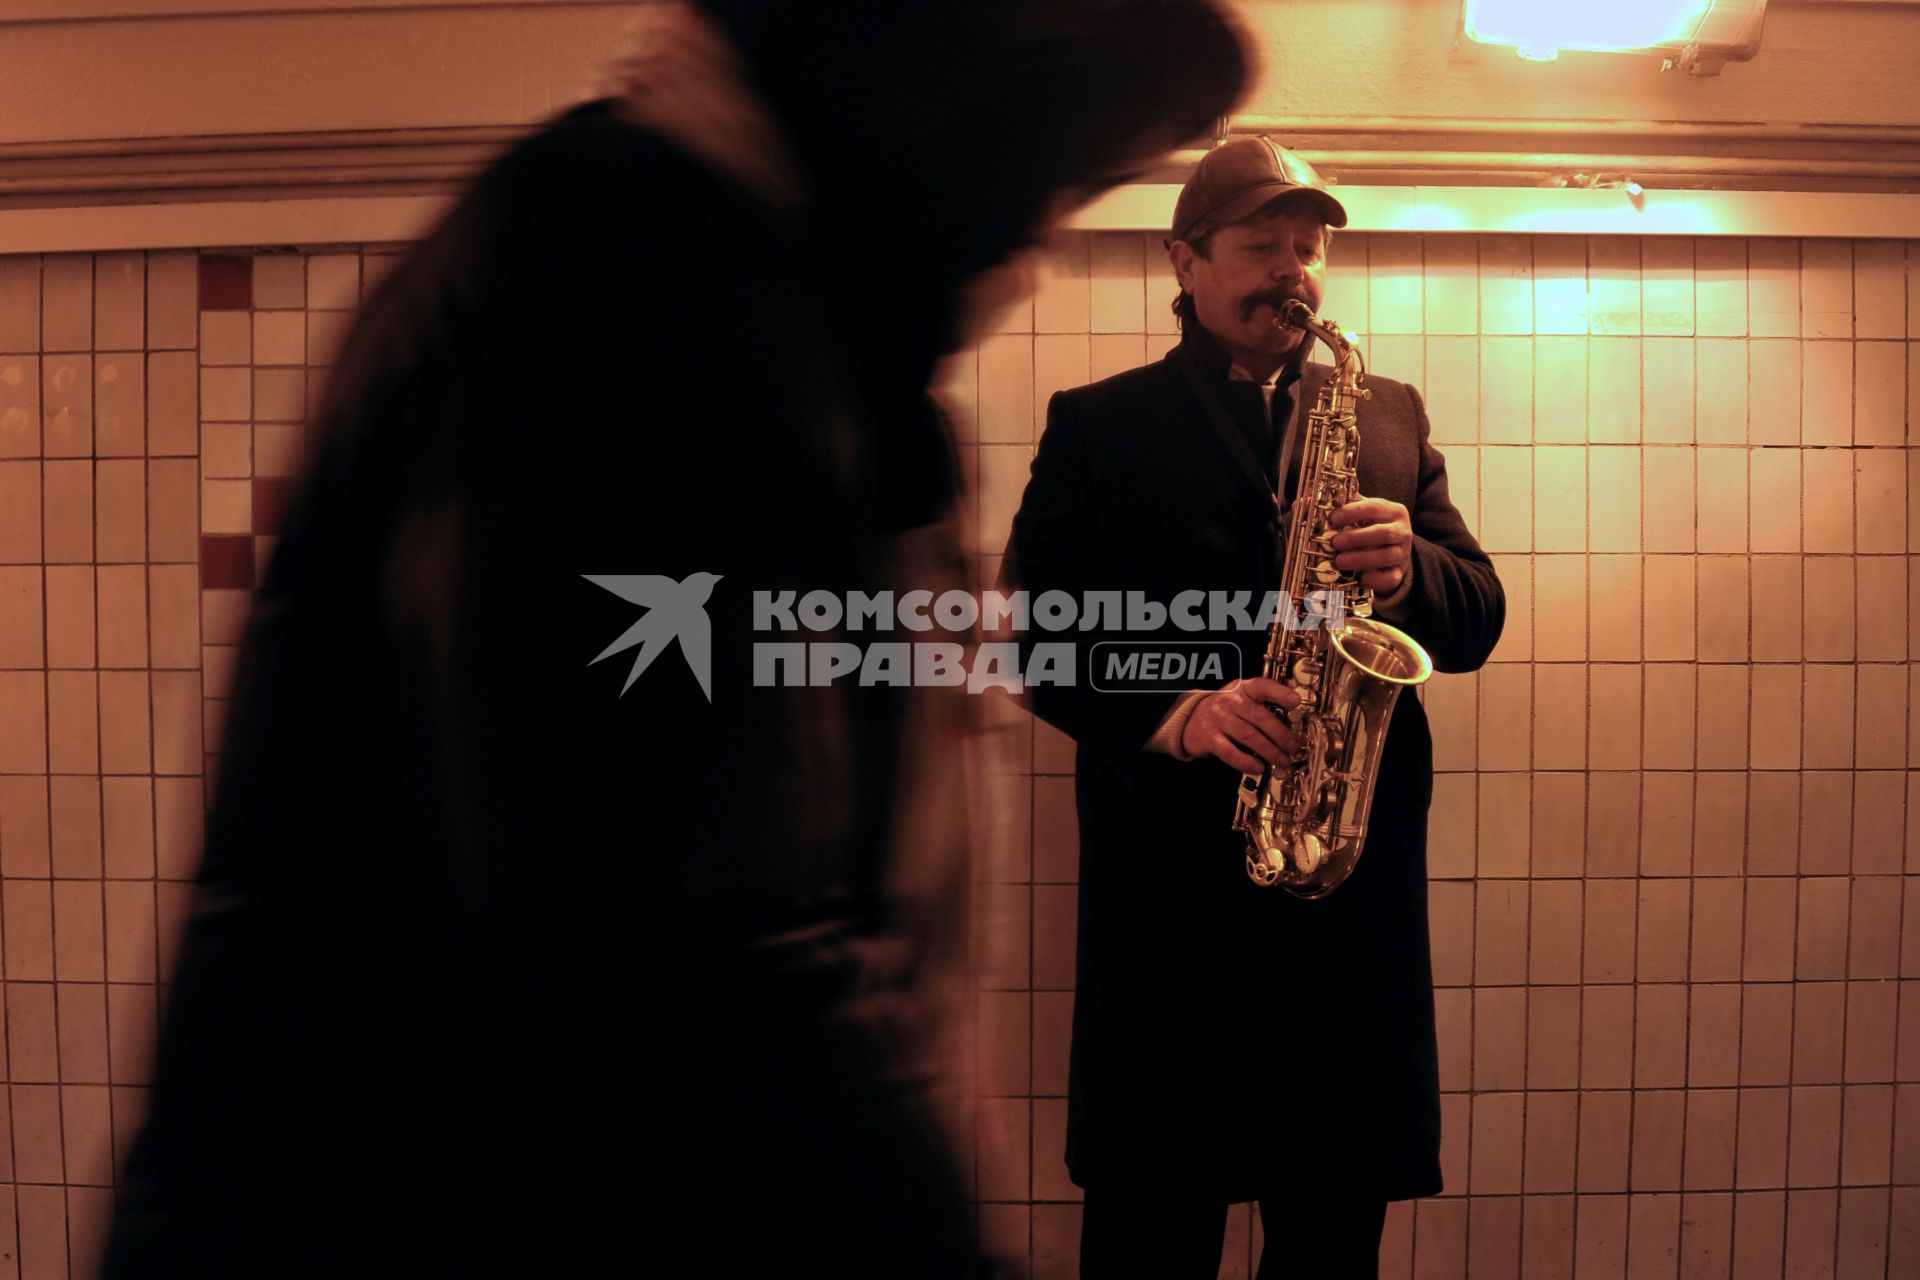 Саксофонист играет в подземном переходе.